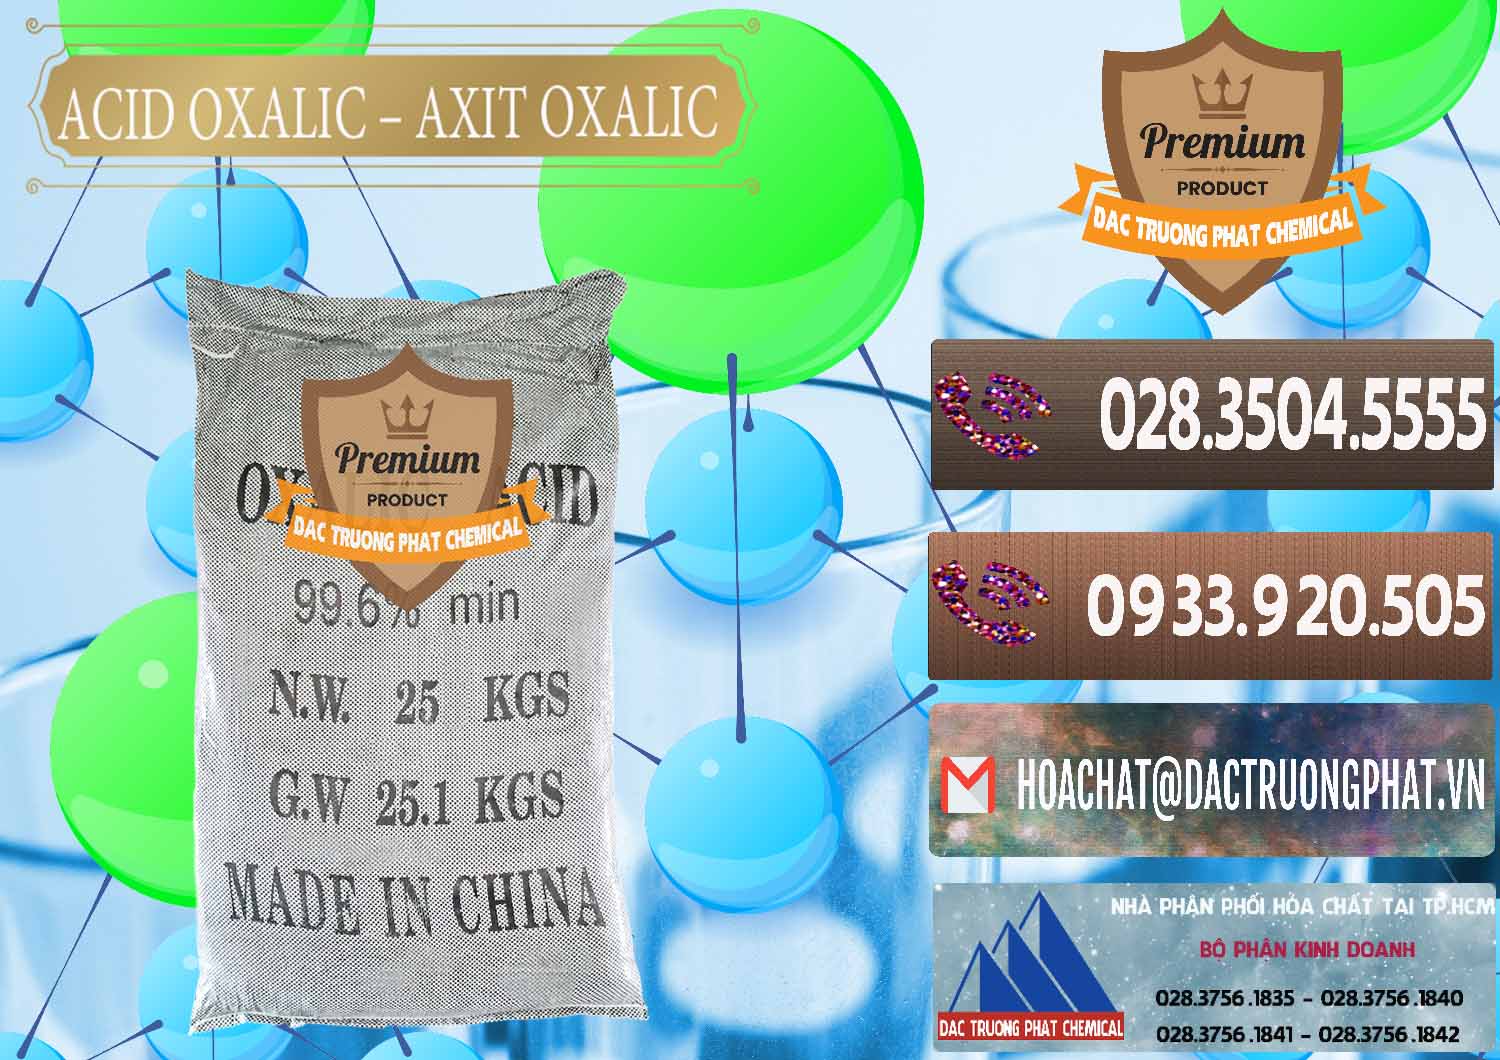 Cty chuyên bán & cung cấp Acid Oxalic – Axit Oxalic 99.6% Trung Quốc China - 0014 - Công ty kinh doanh & phân phối hóa chất tại TP.HCM - hoachatviet.net